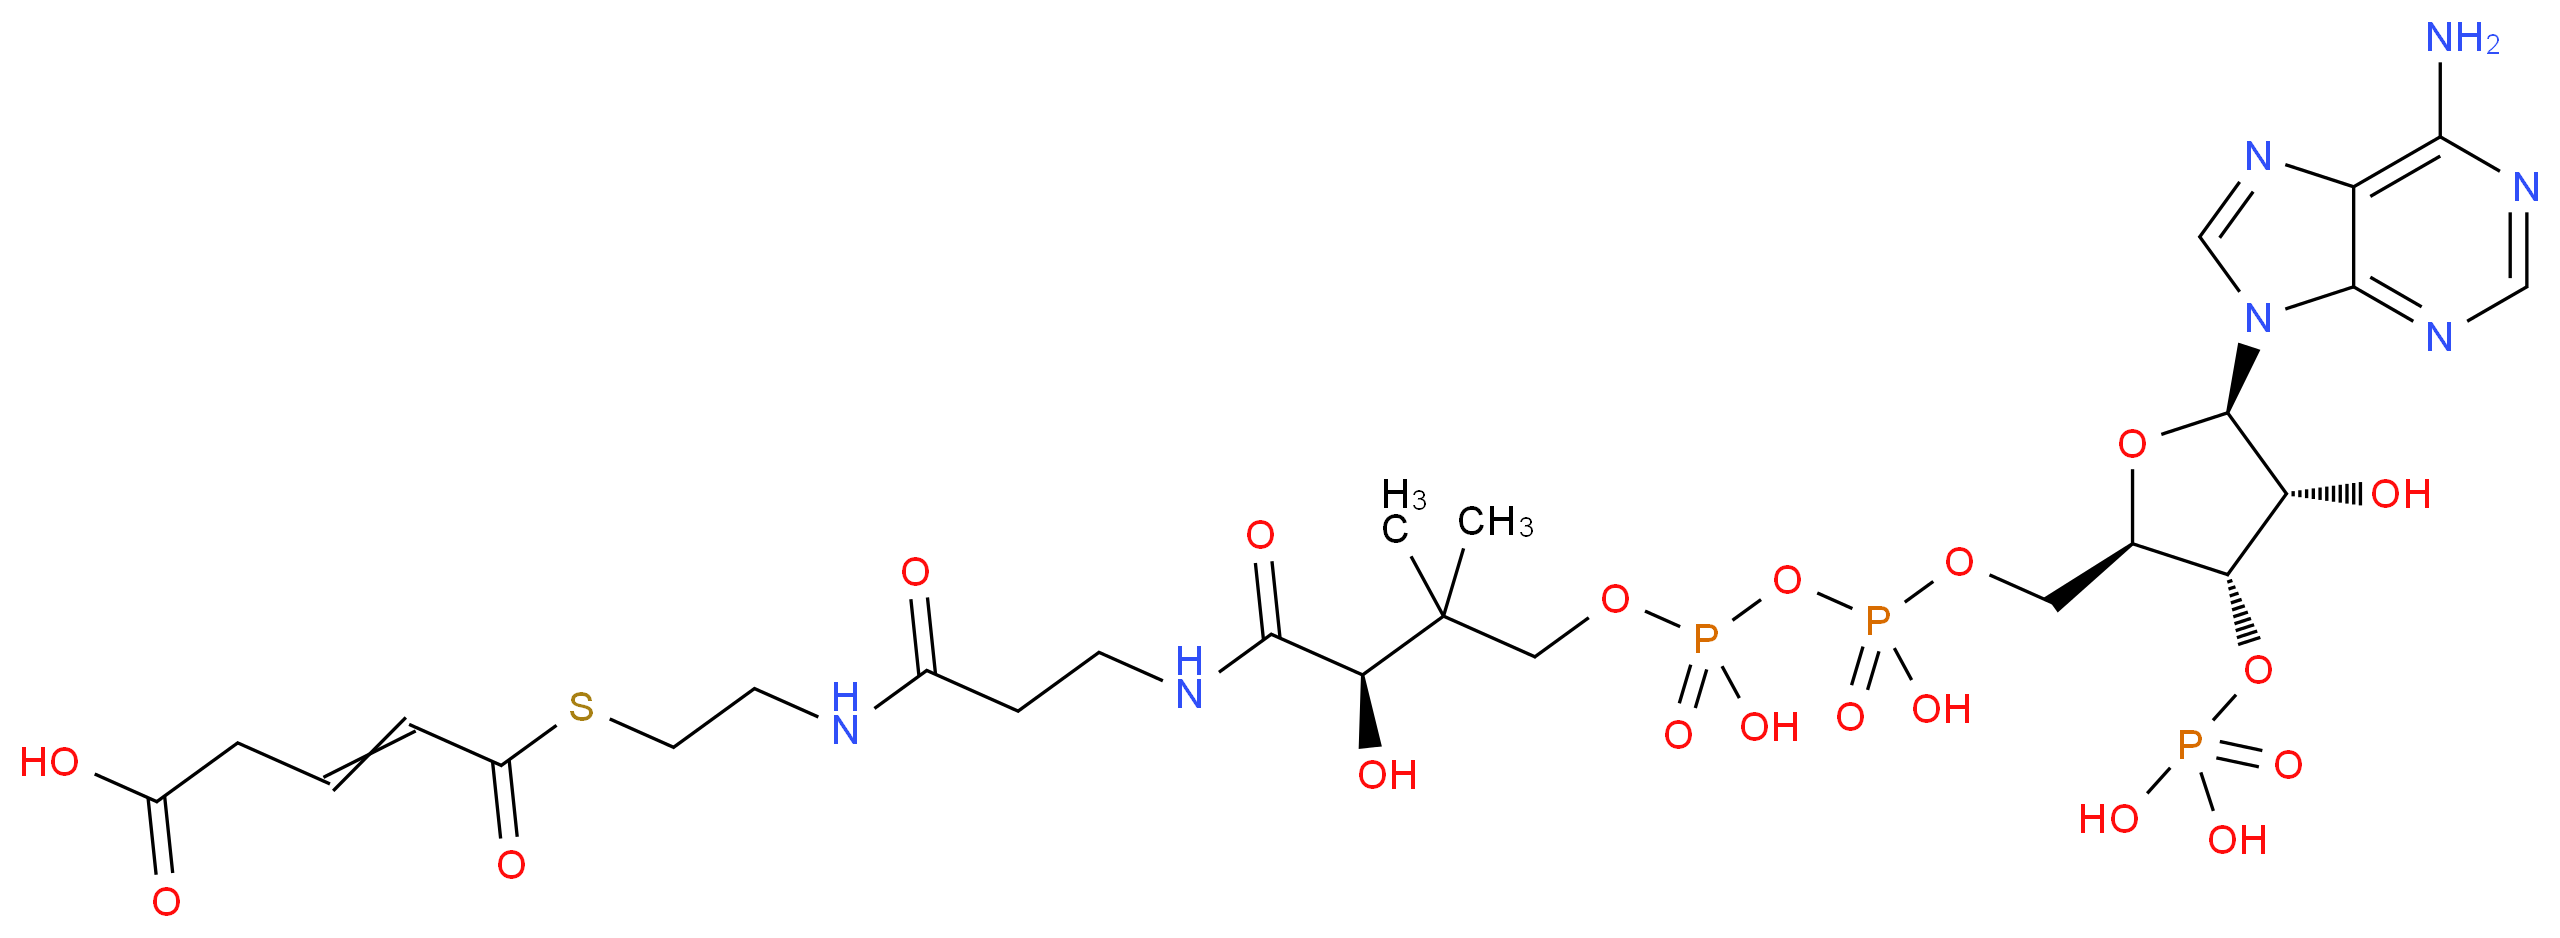 6712-05-6 molecular structure